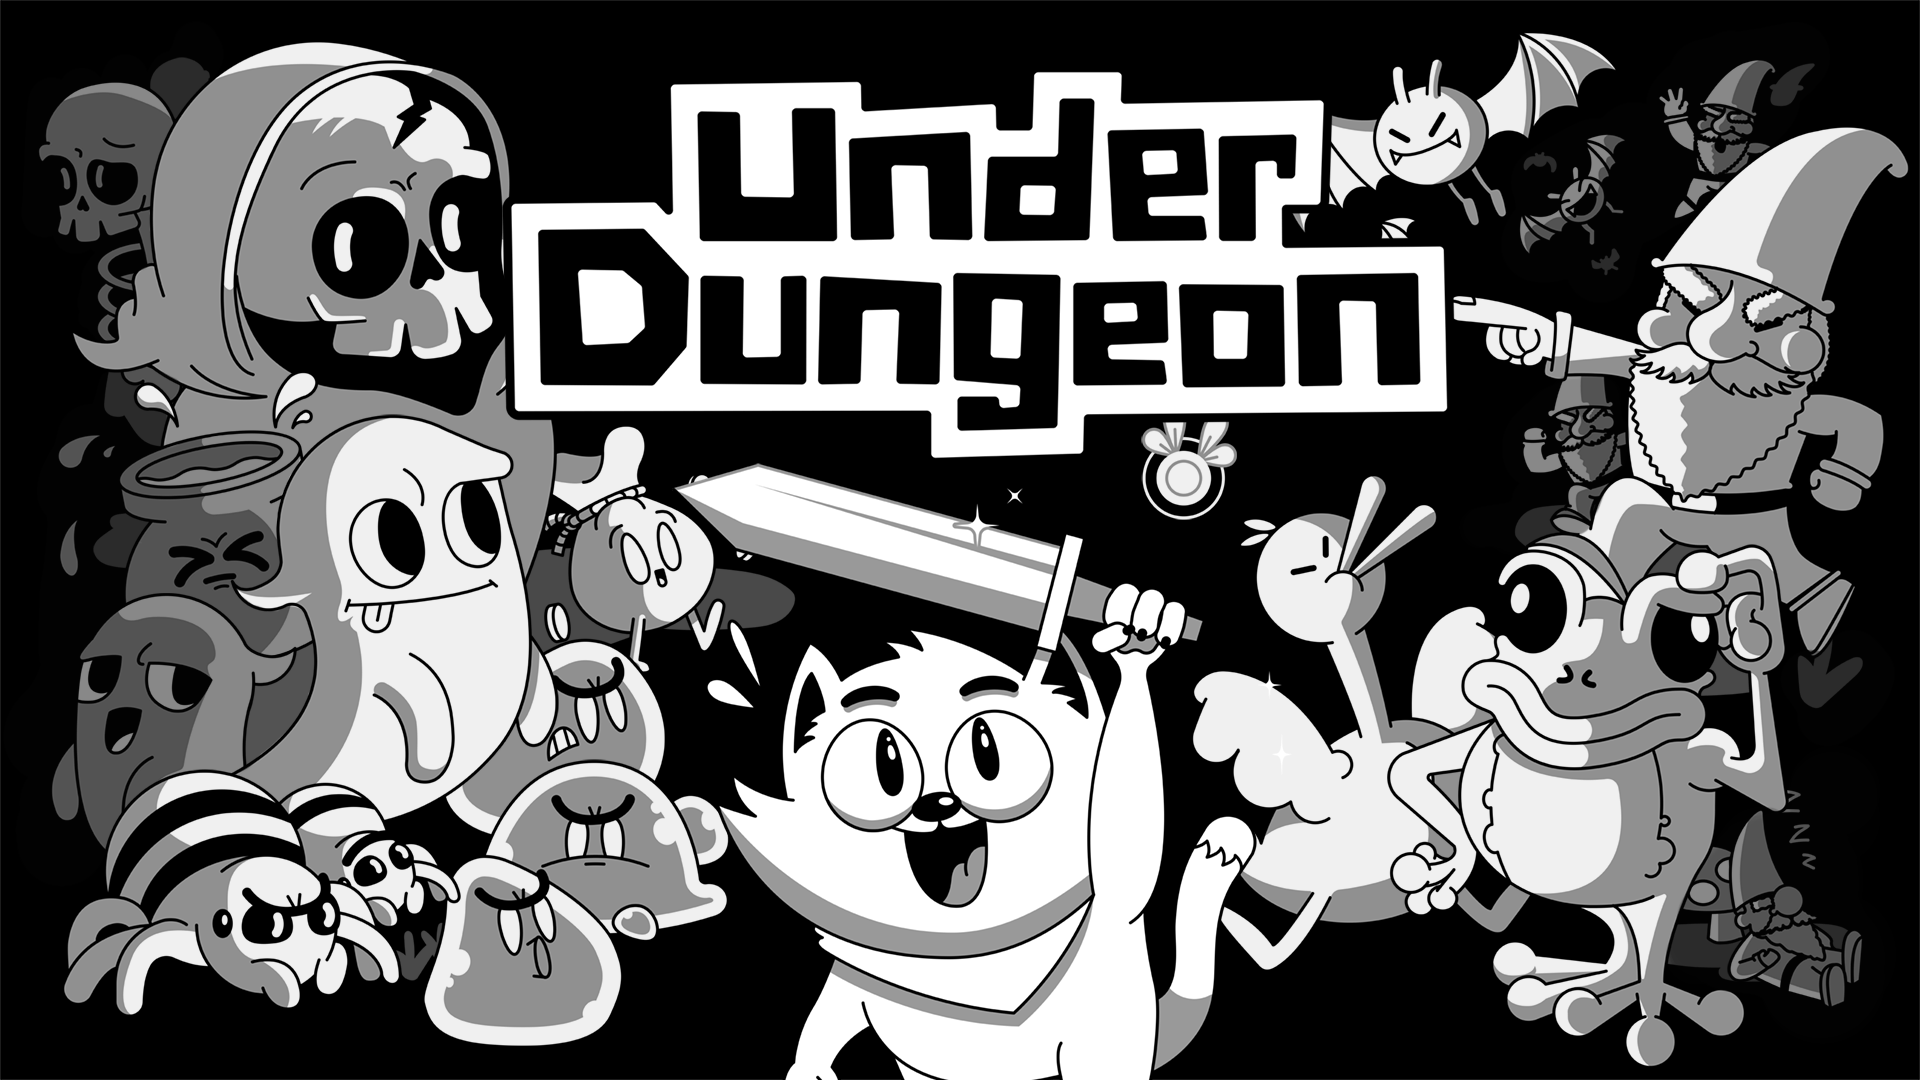 UnderDungeon, pierwszy Dungeon Crawler z kotami w roli głównej, jest już dostępny na Xbox